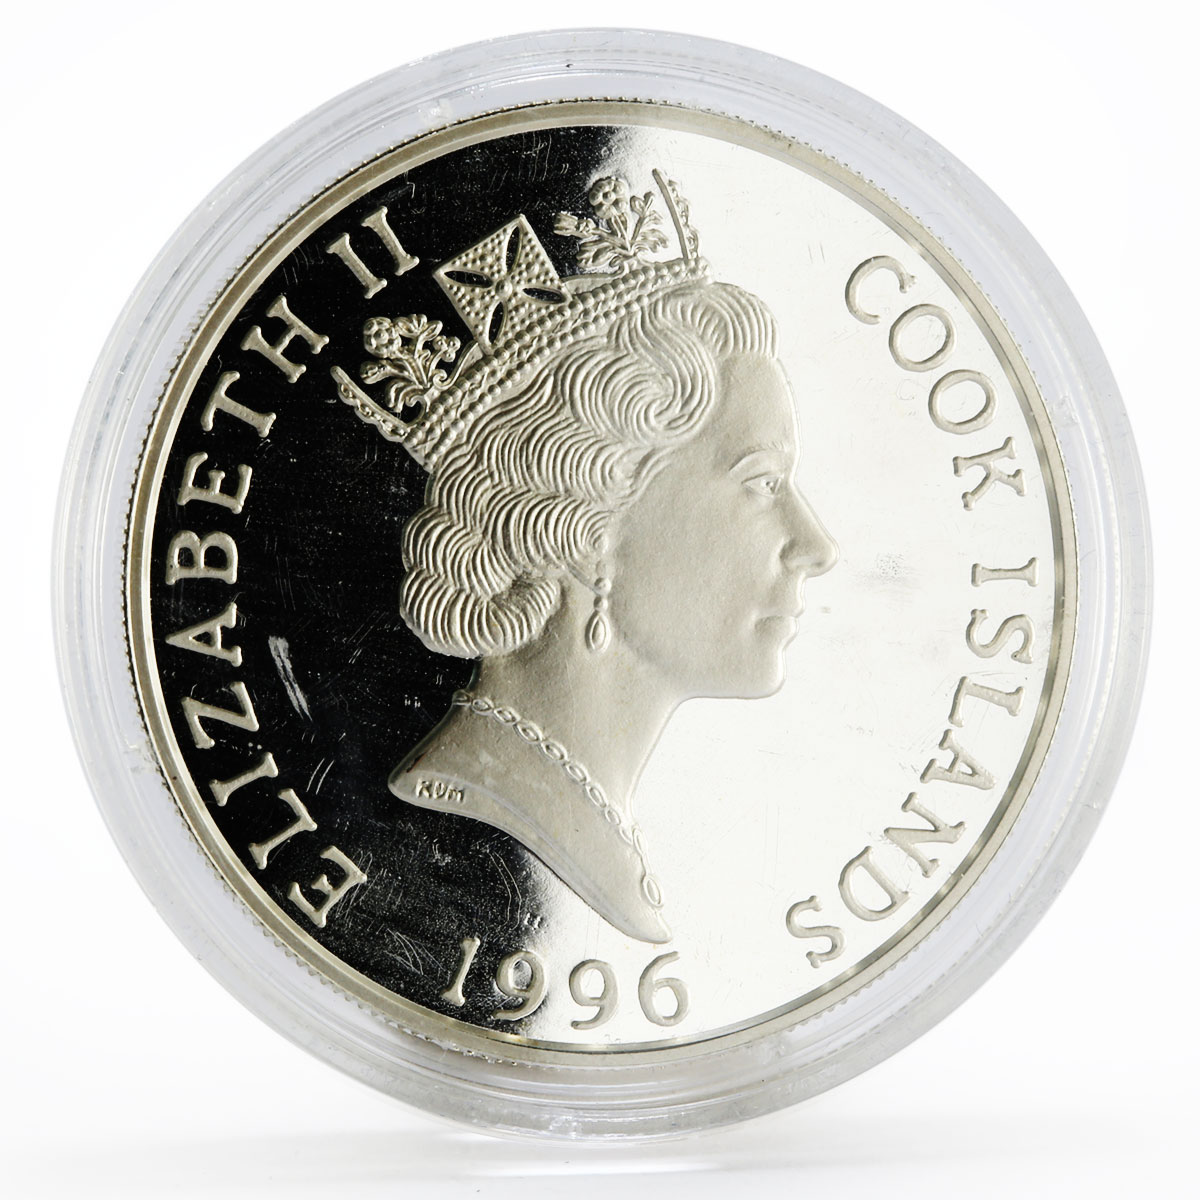 Cook Islands 5 dollars Endangered Wildlife series Gepard proof silver coin 1996